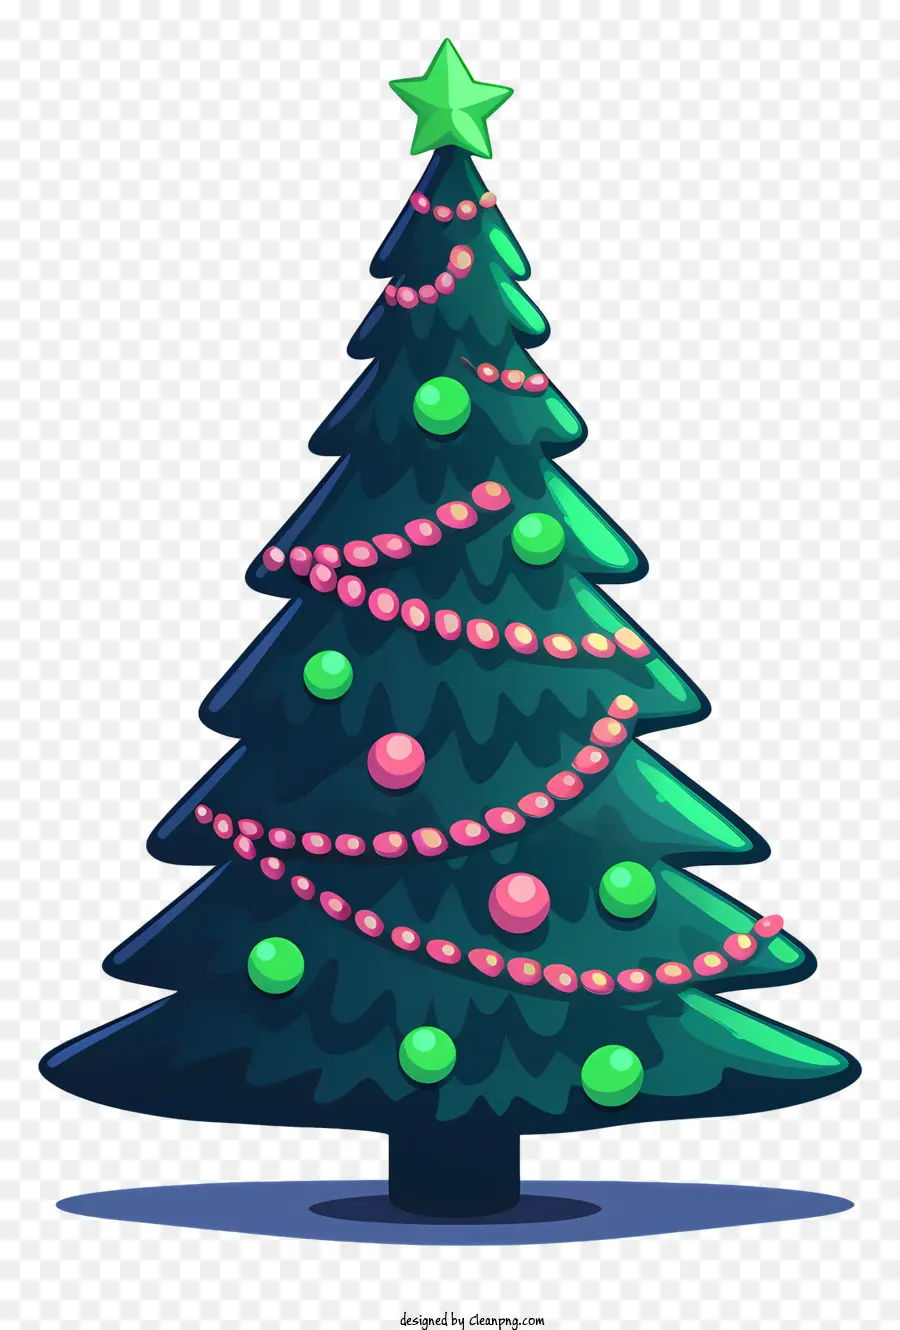 albero di natale - Albero di Natale fatto di ornamenti verdi e rossi